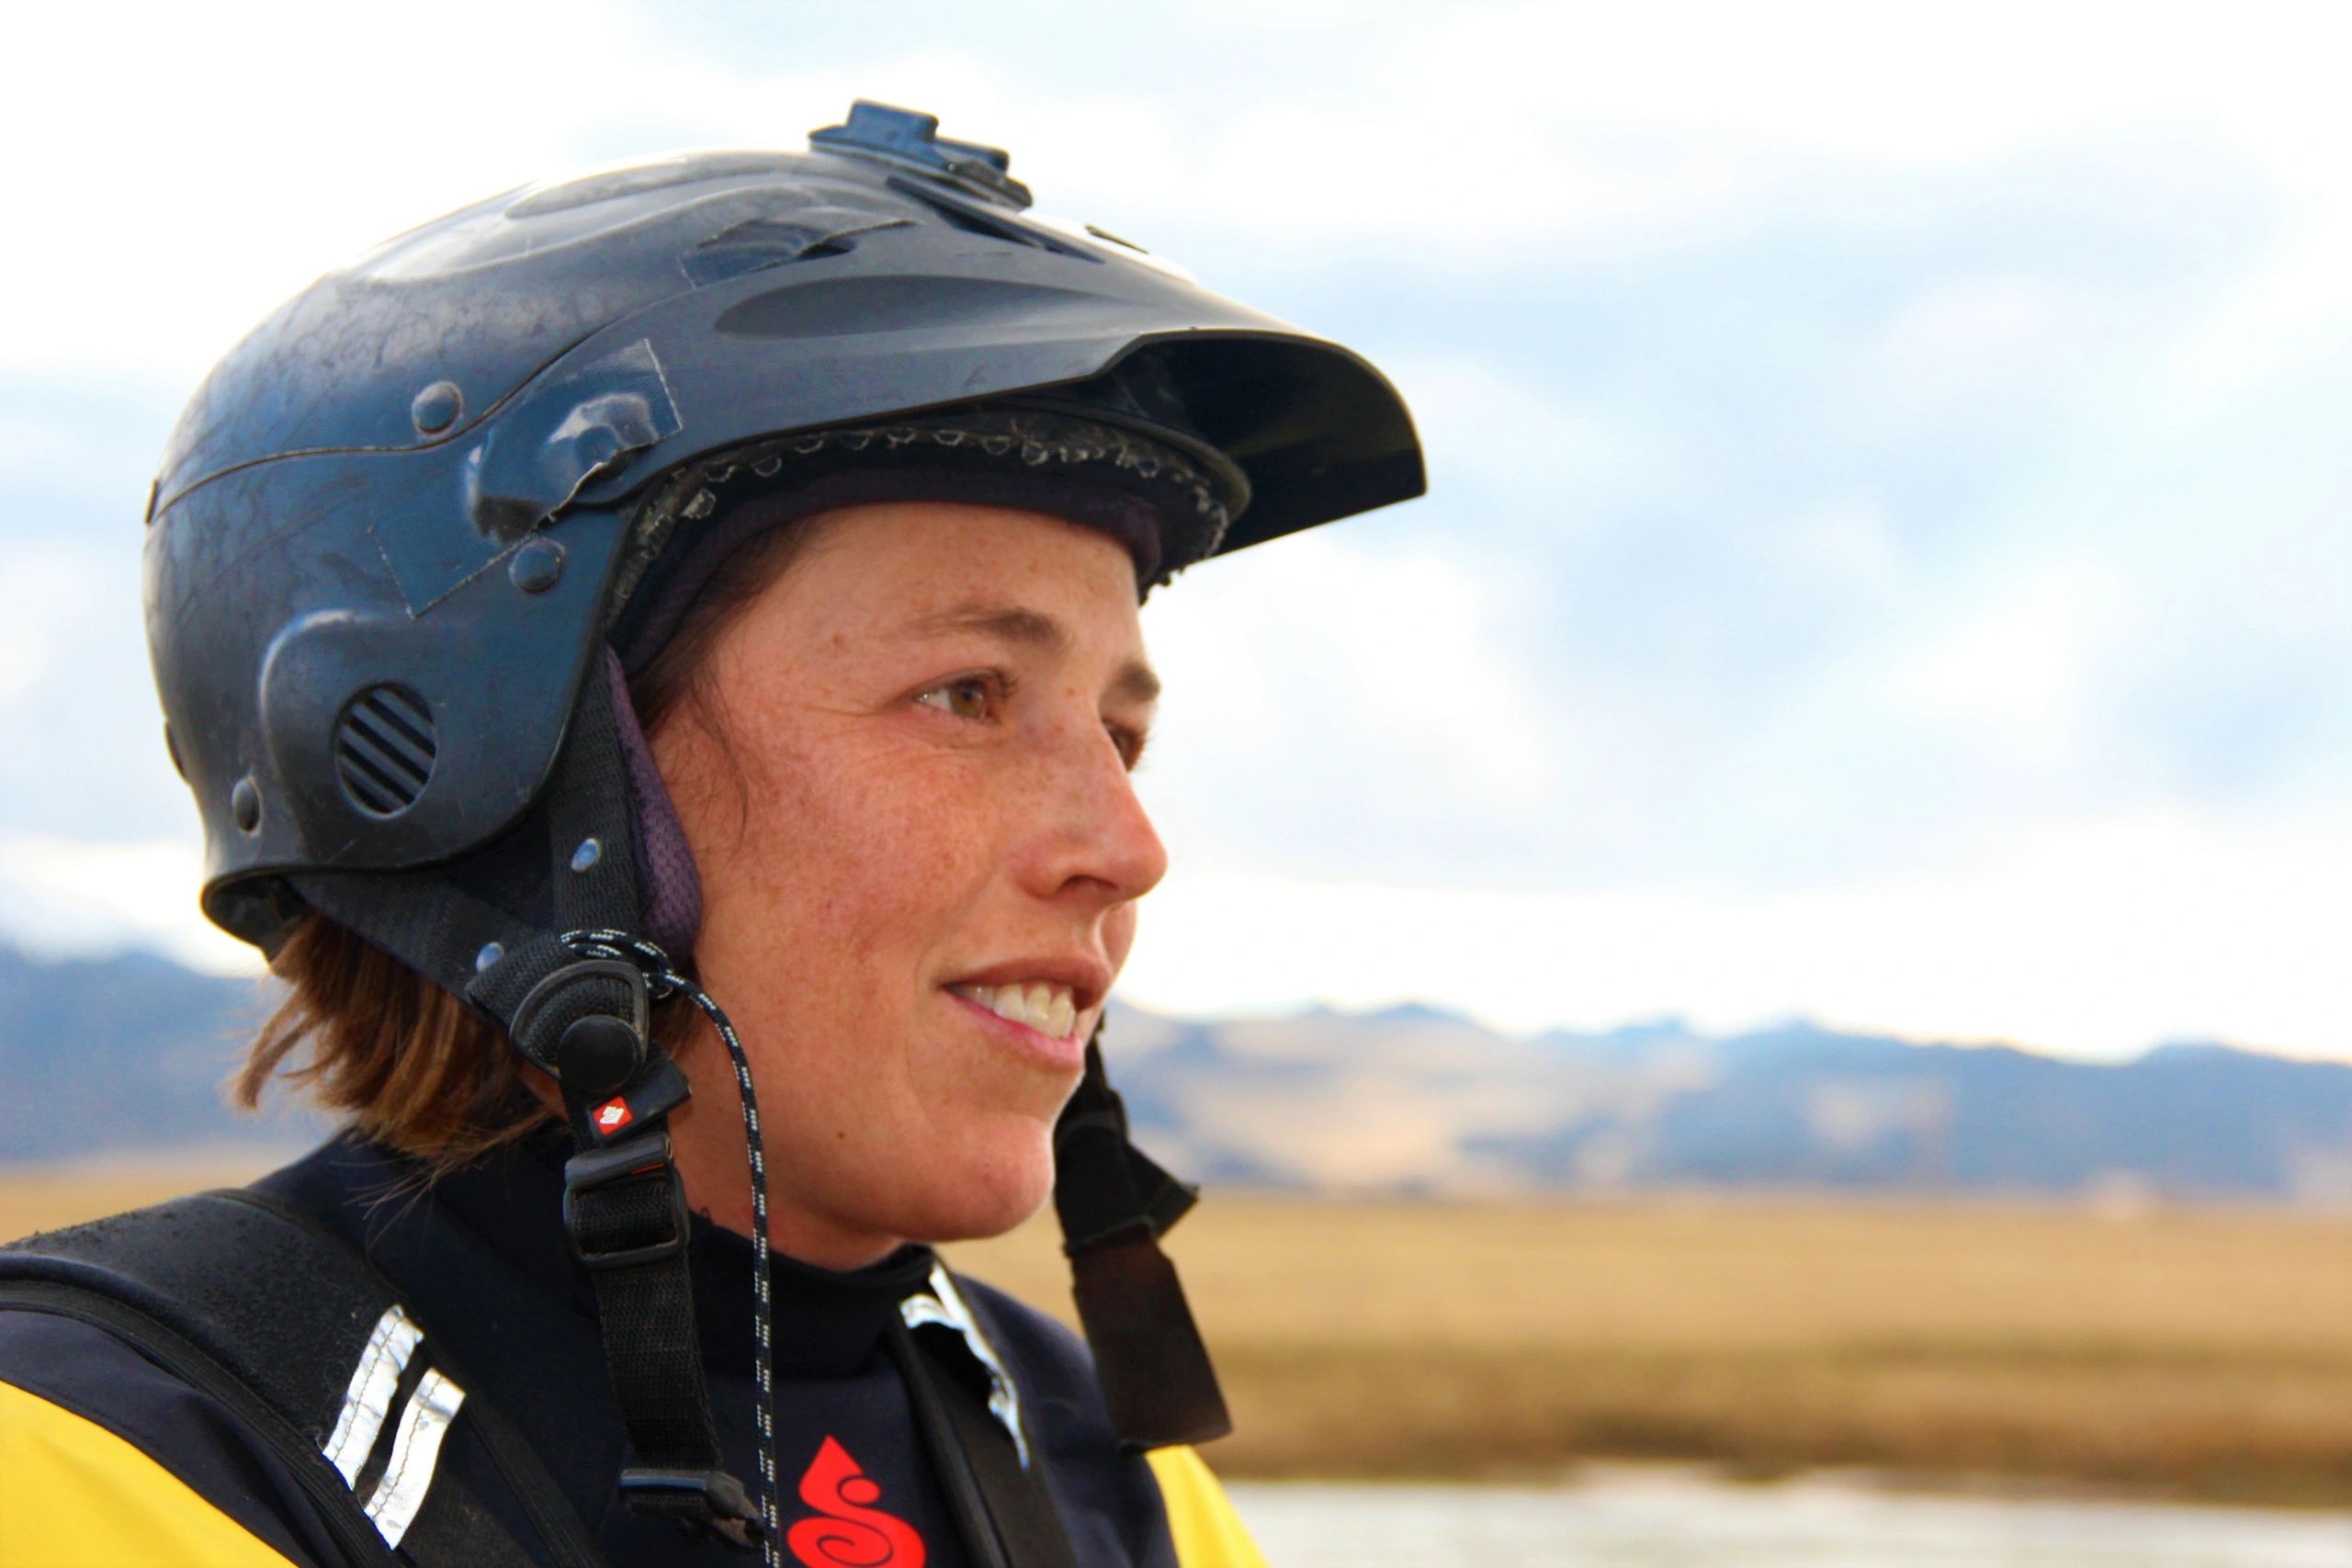 Darcy Gaechter, kayaking the Amazon River, kayaking, badass woman